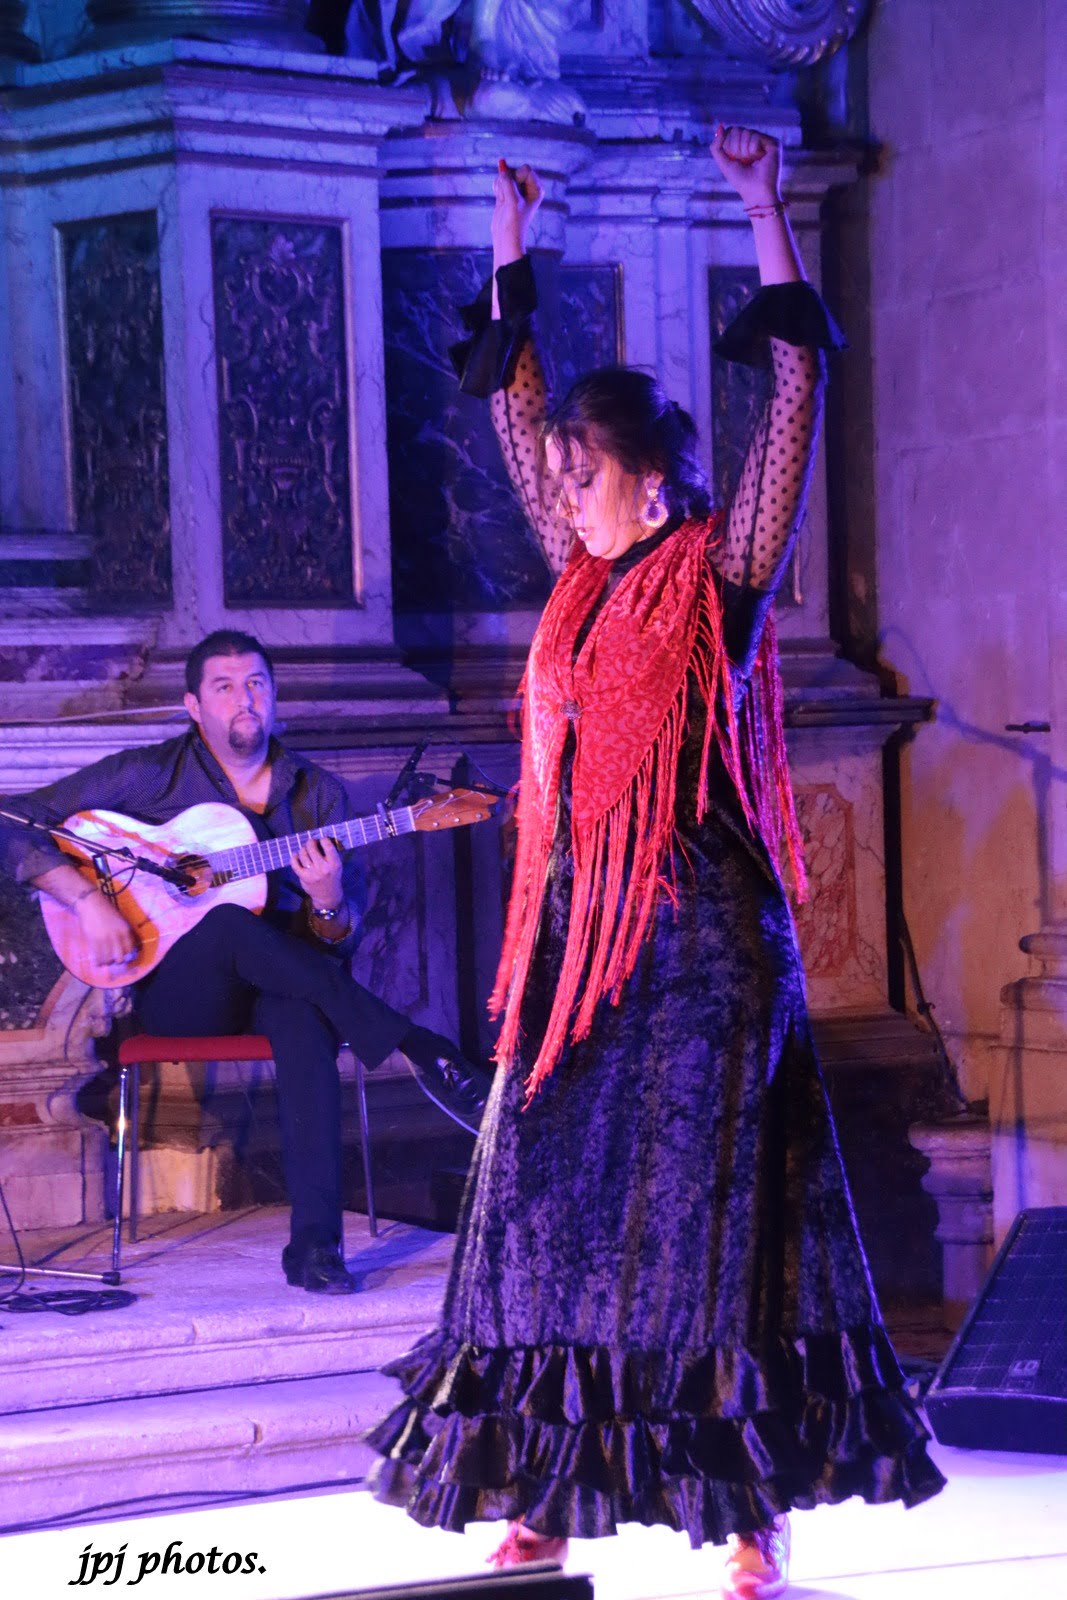 Por qué a los franceses les gusta el flamenco